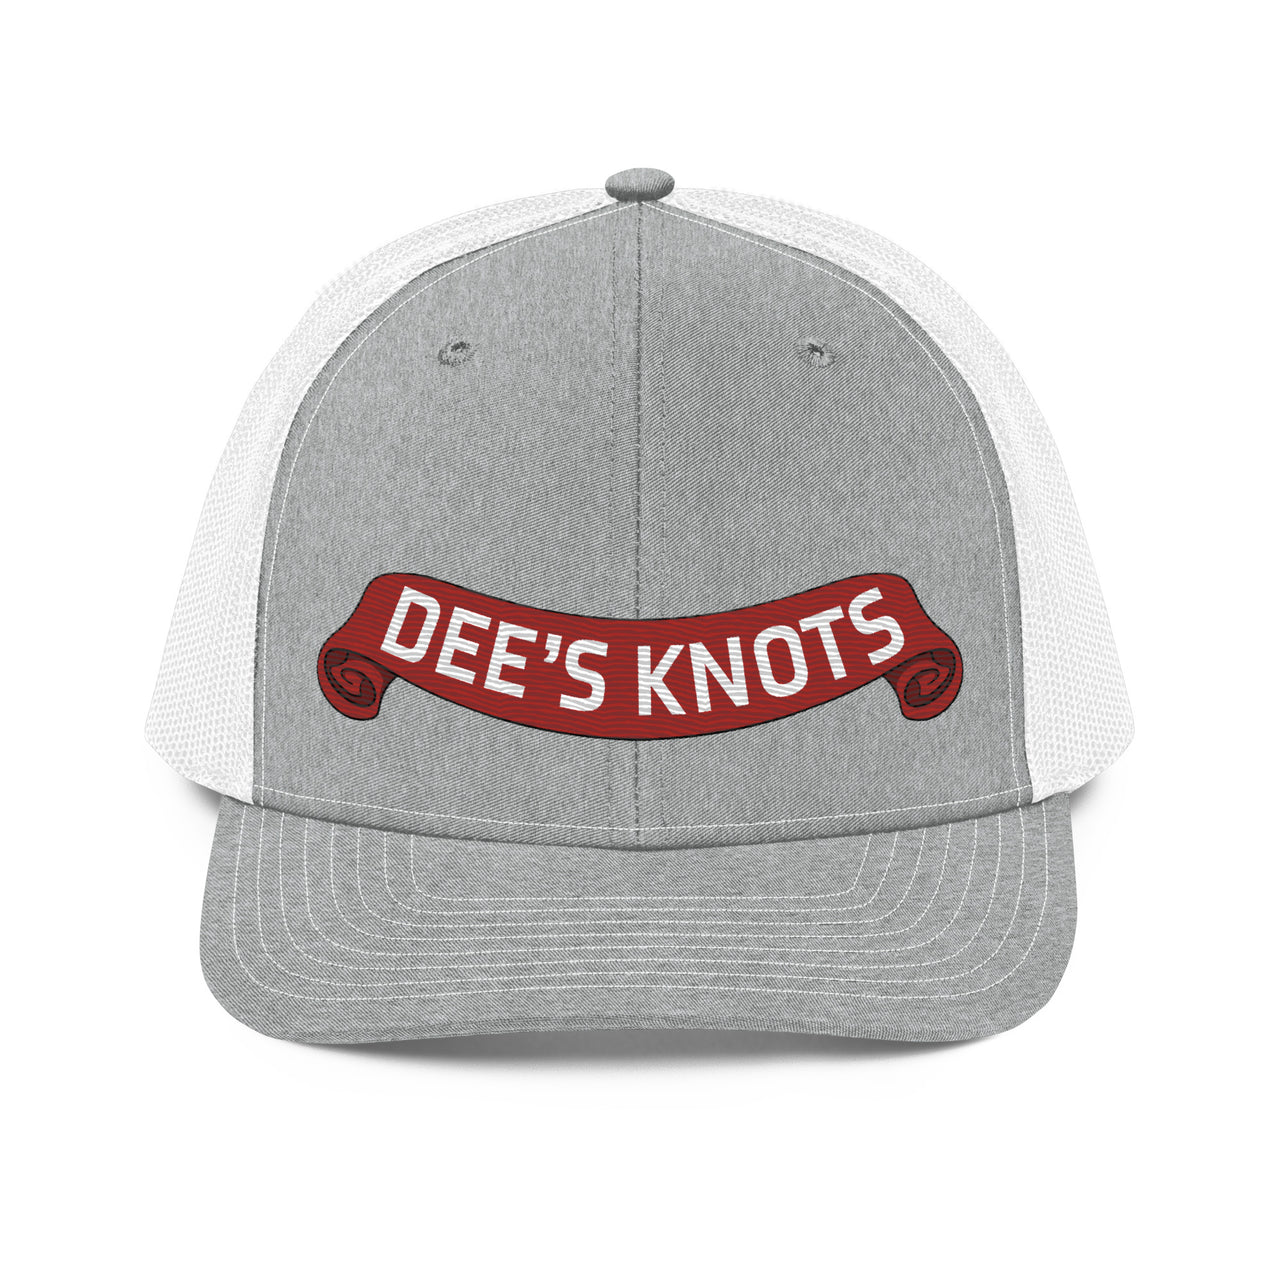 Dee's Knots- Trucker Hat